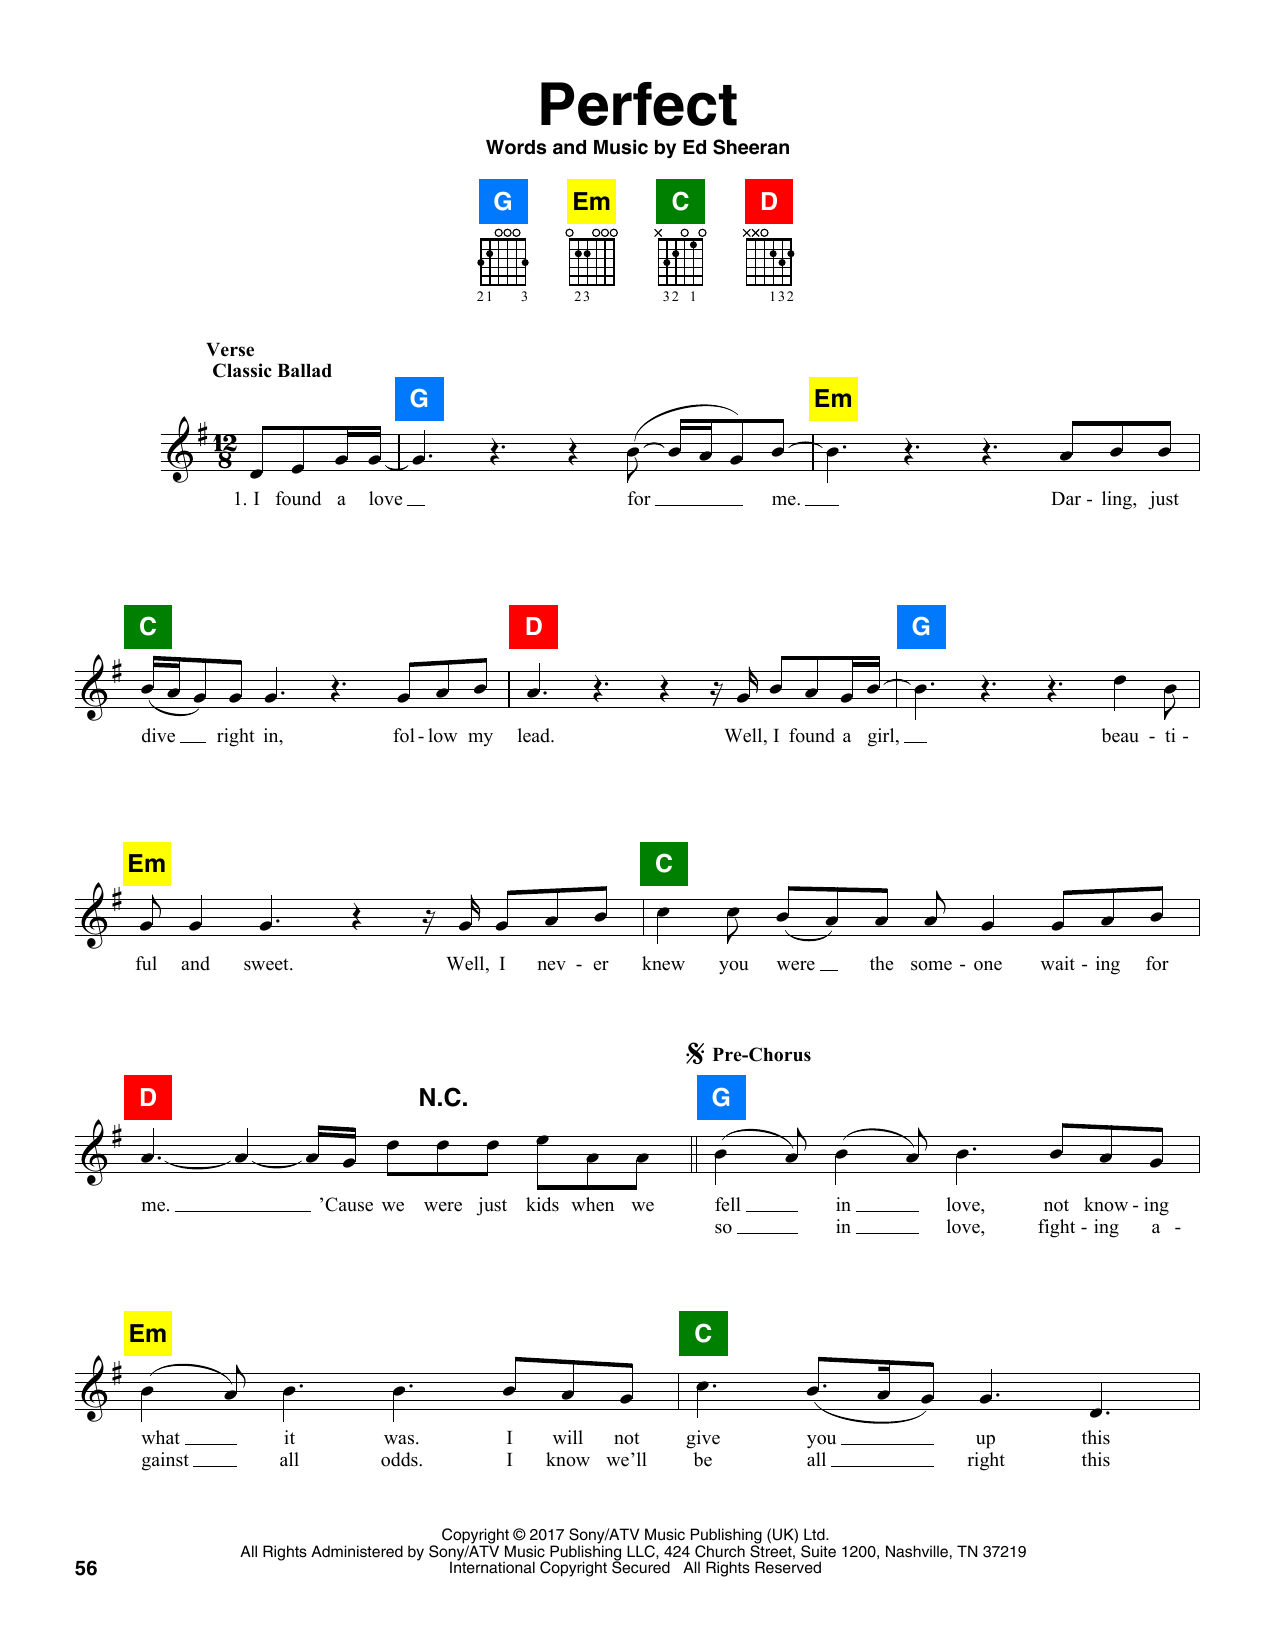 Ed Sheeran "Perfect" Sheet Music Notes | Download Printable PDF Score